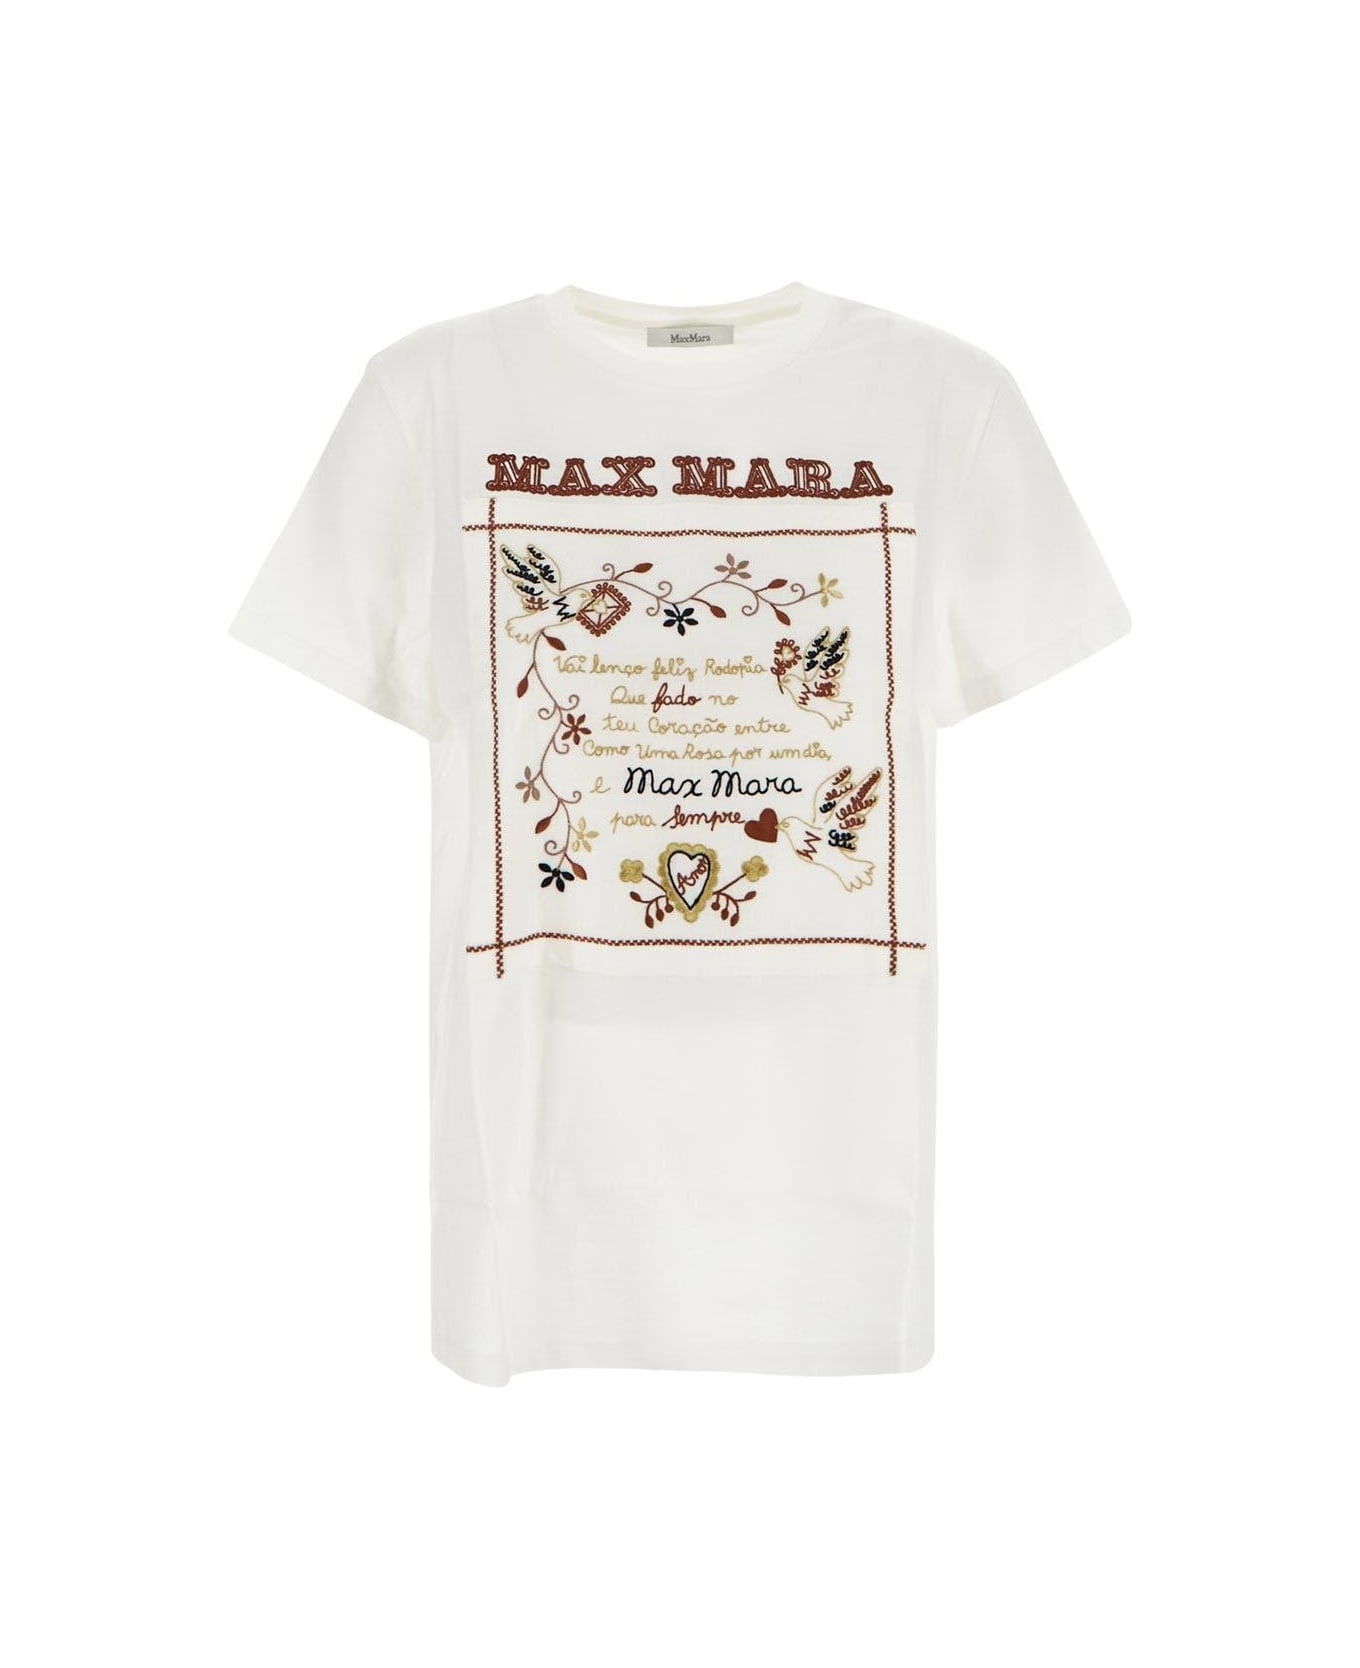 Max Mara Embroidered T-shirt - White Tシャツ